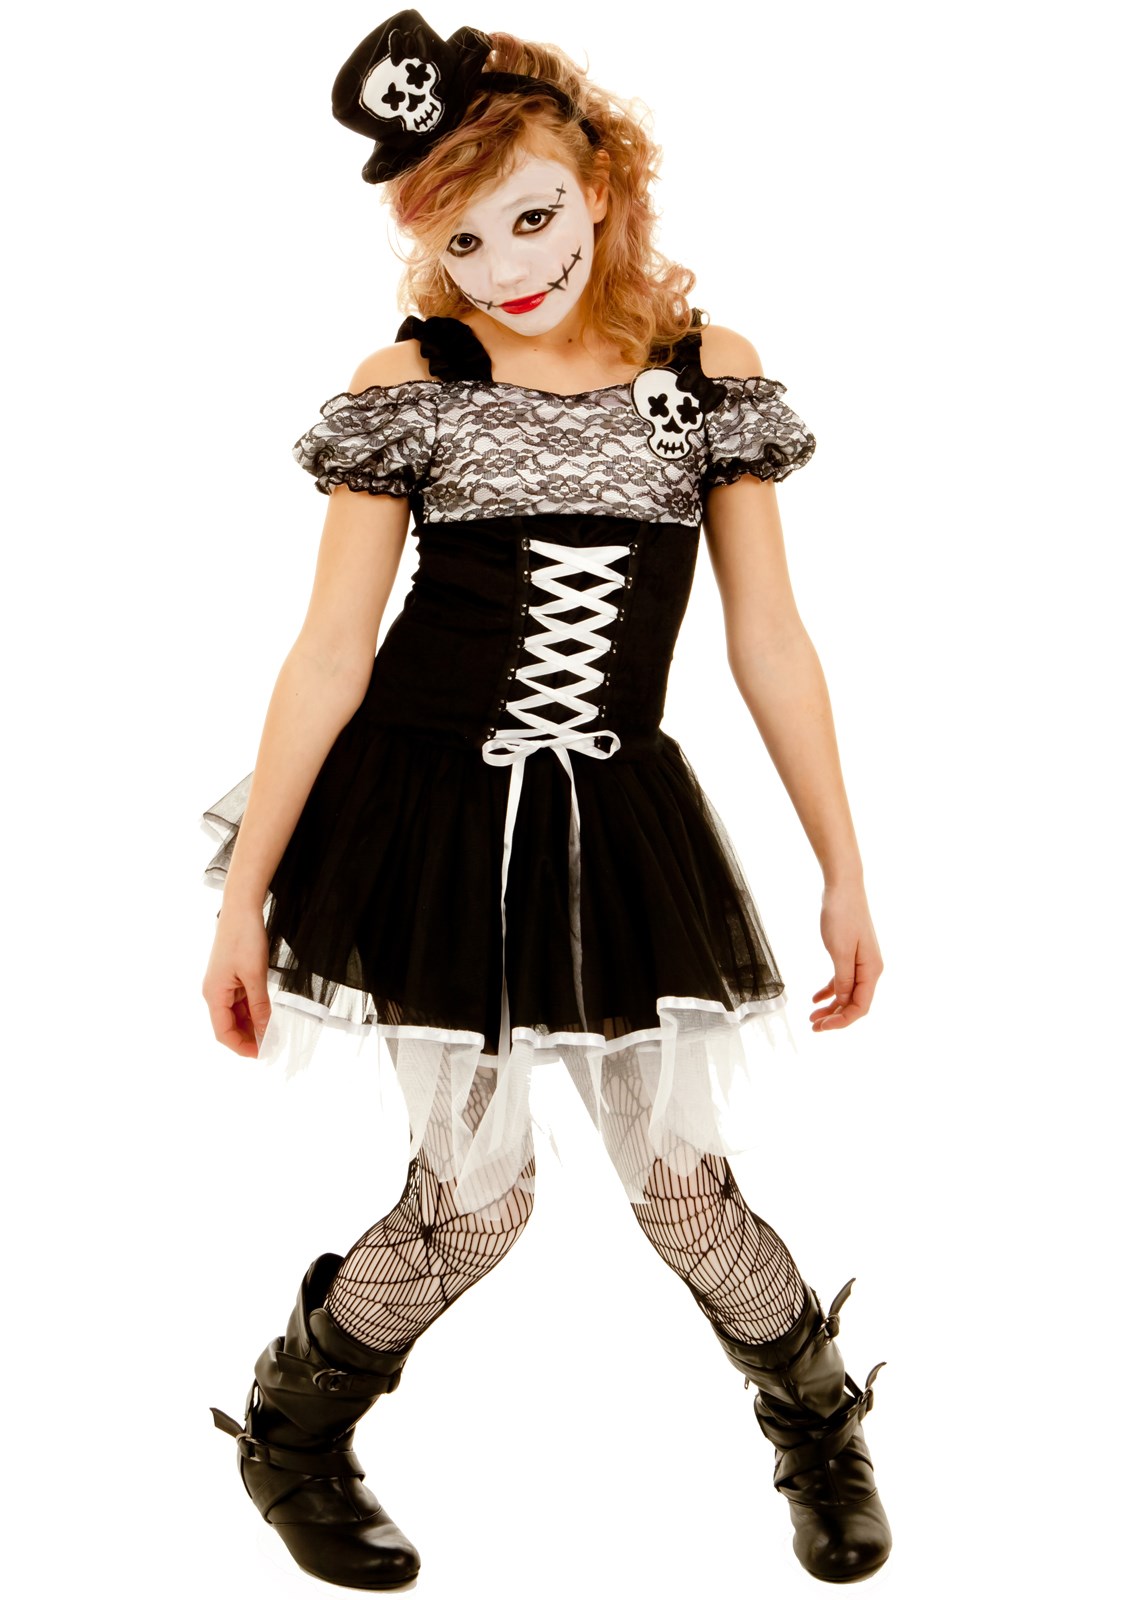 Shea the Skull Girl Child Costume